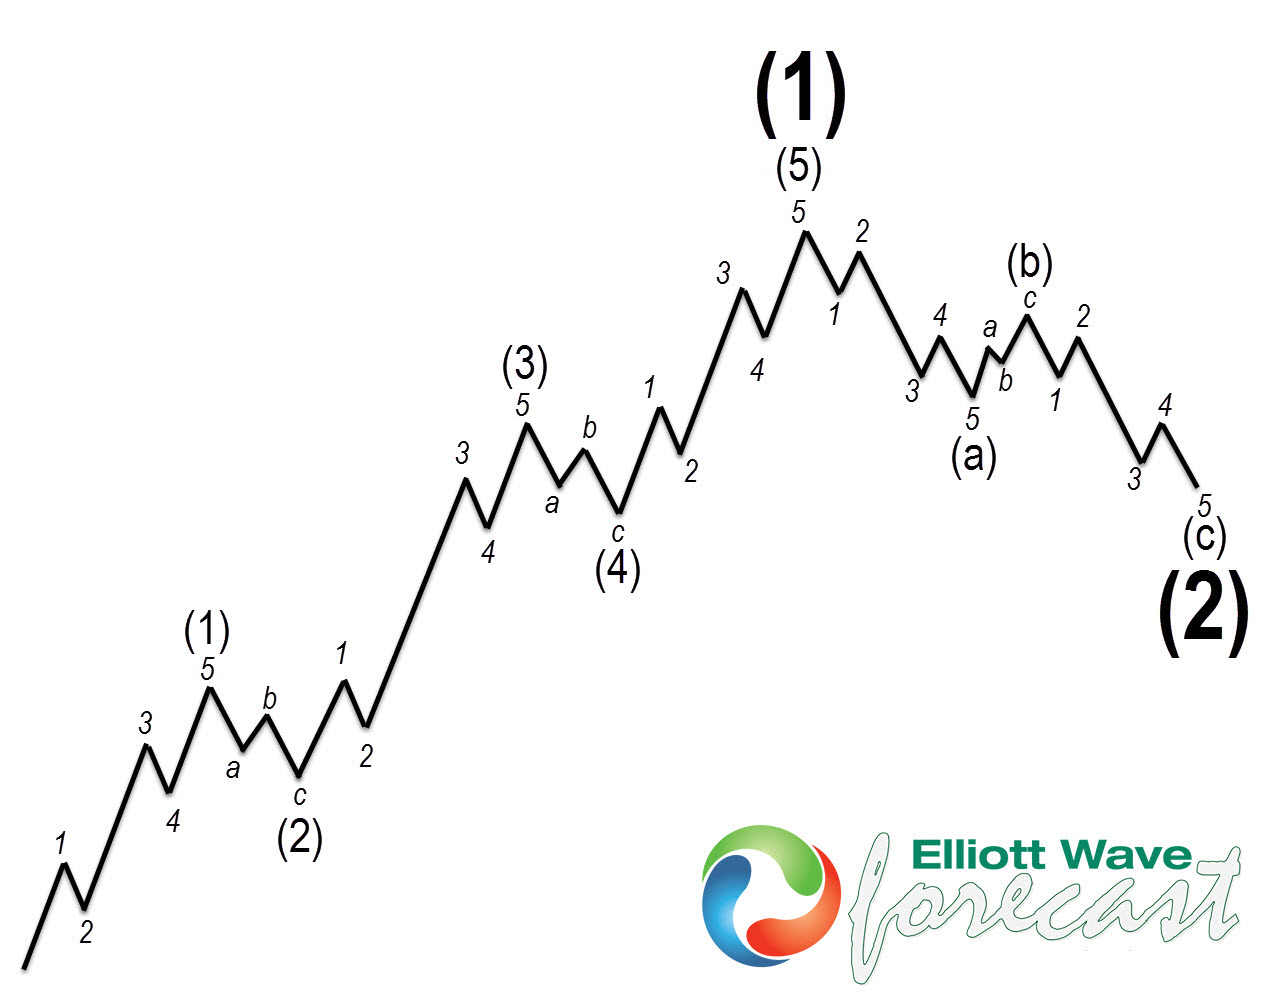 Elliott wave impulse pattern for Crude Oil blog